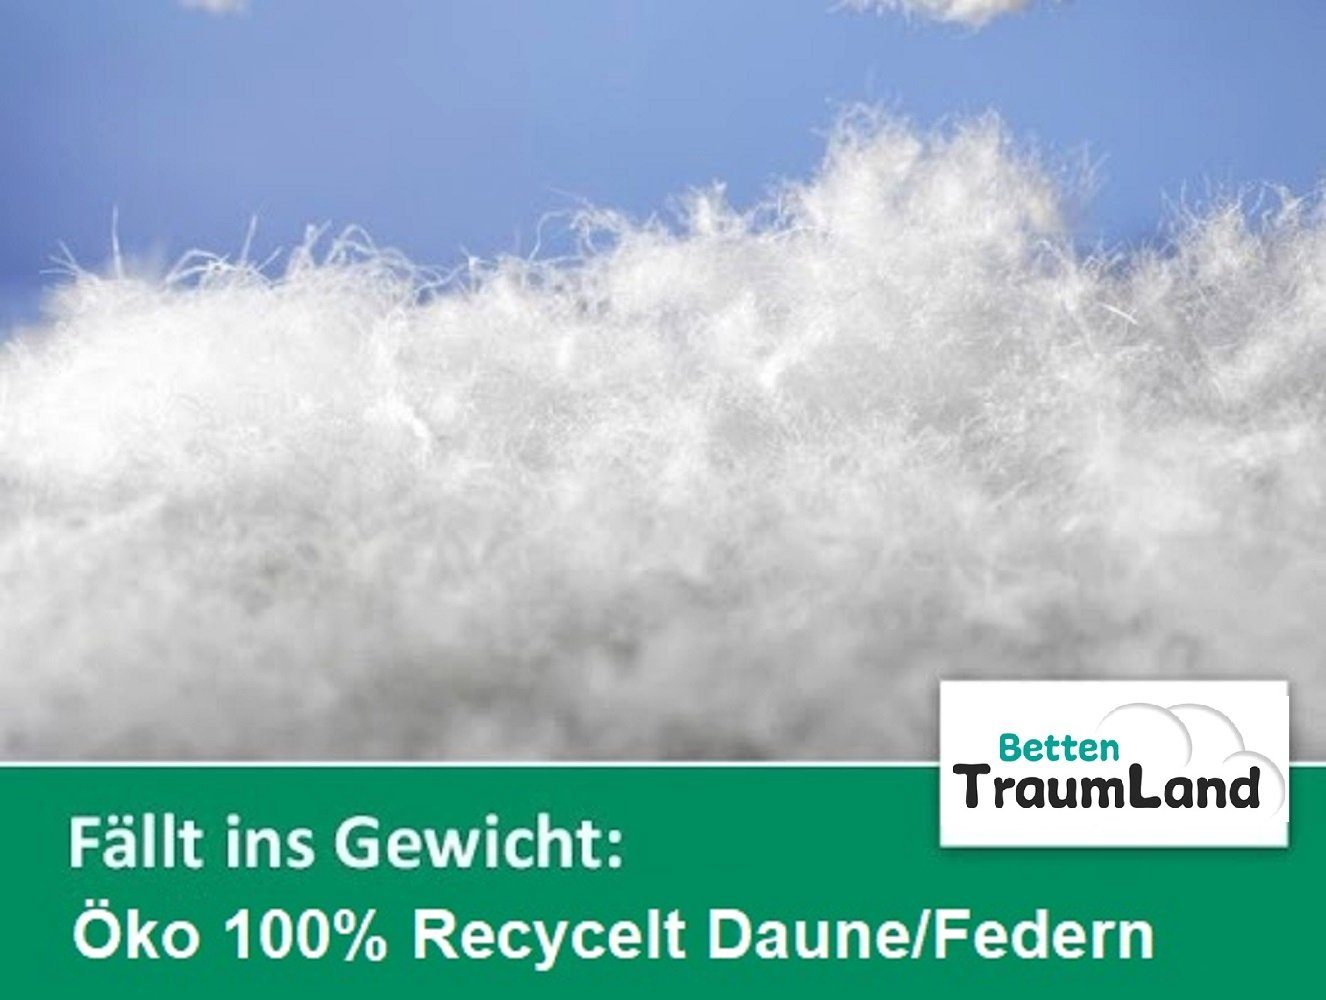 Betten in Deutschland 100% Sommerdecke Daunen, nachhaltig ökologisch Traumland, hergestellt Daune, Füllung: Öko Daunenbettdecke,